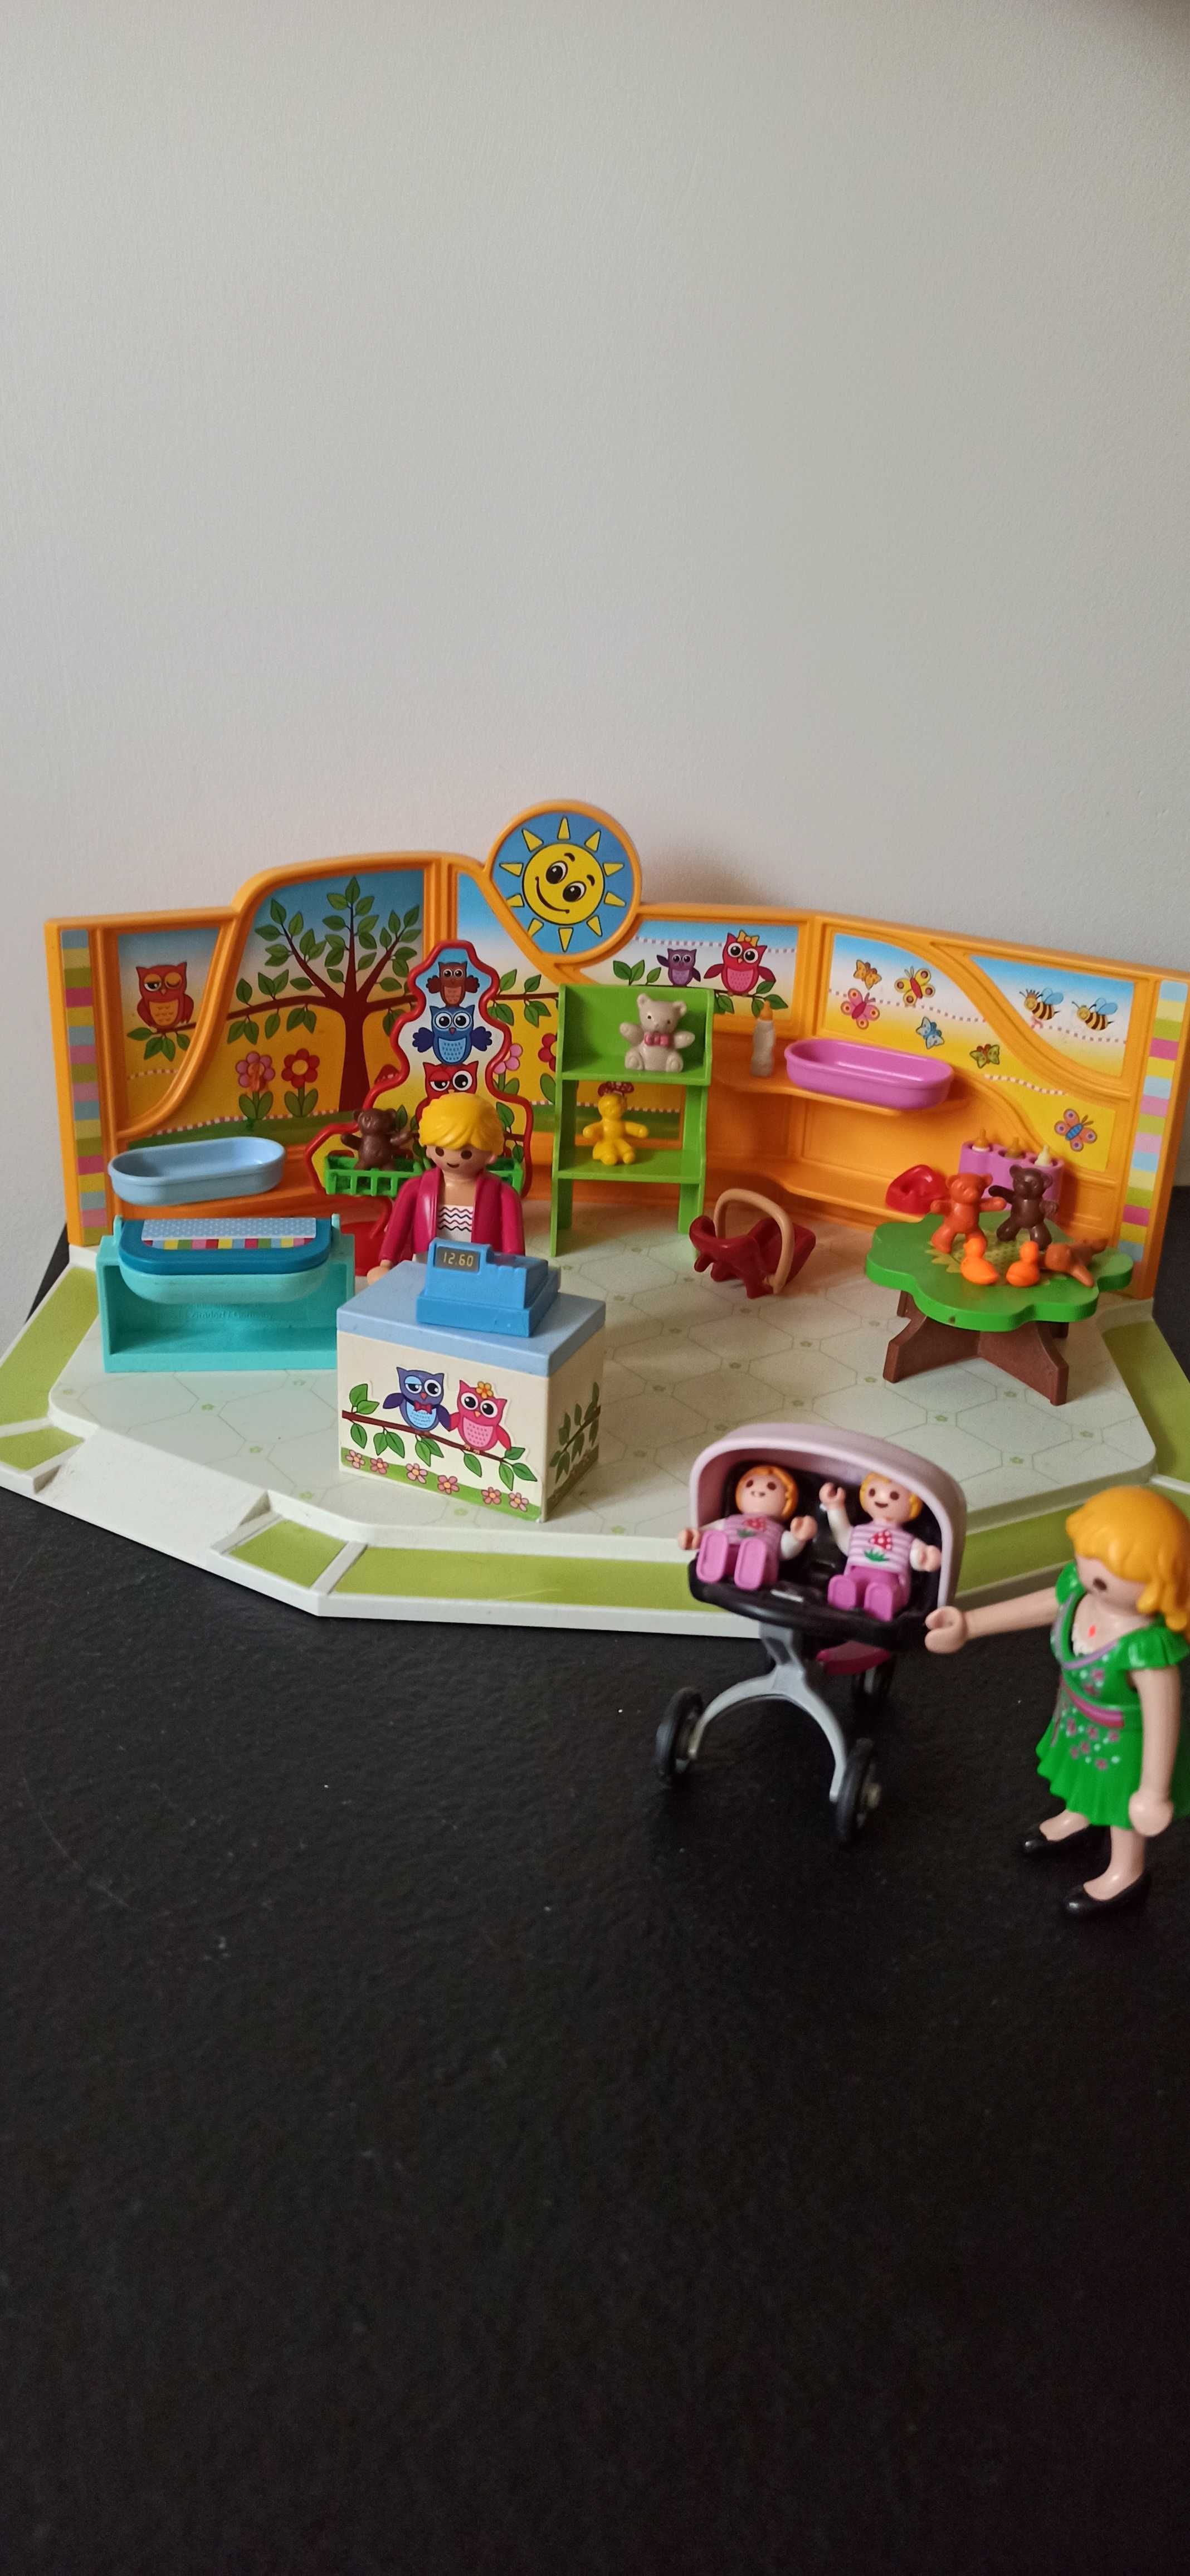 Playmobil sklep z akcesoriami dla dzieci